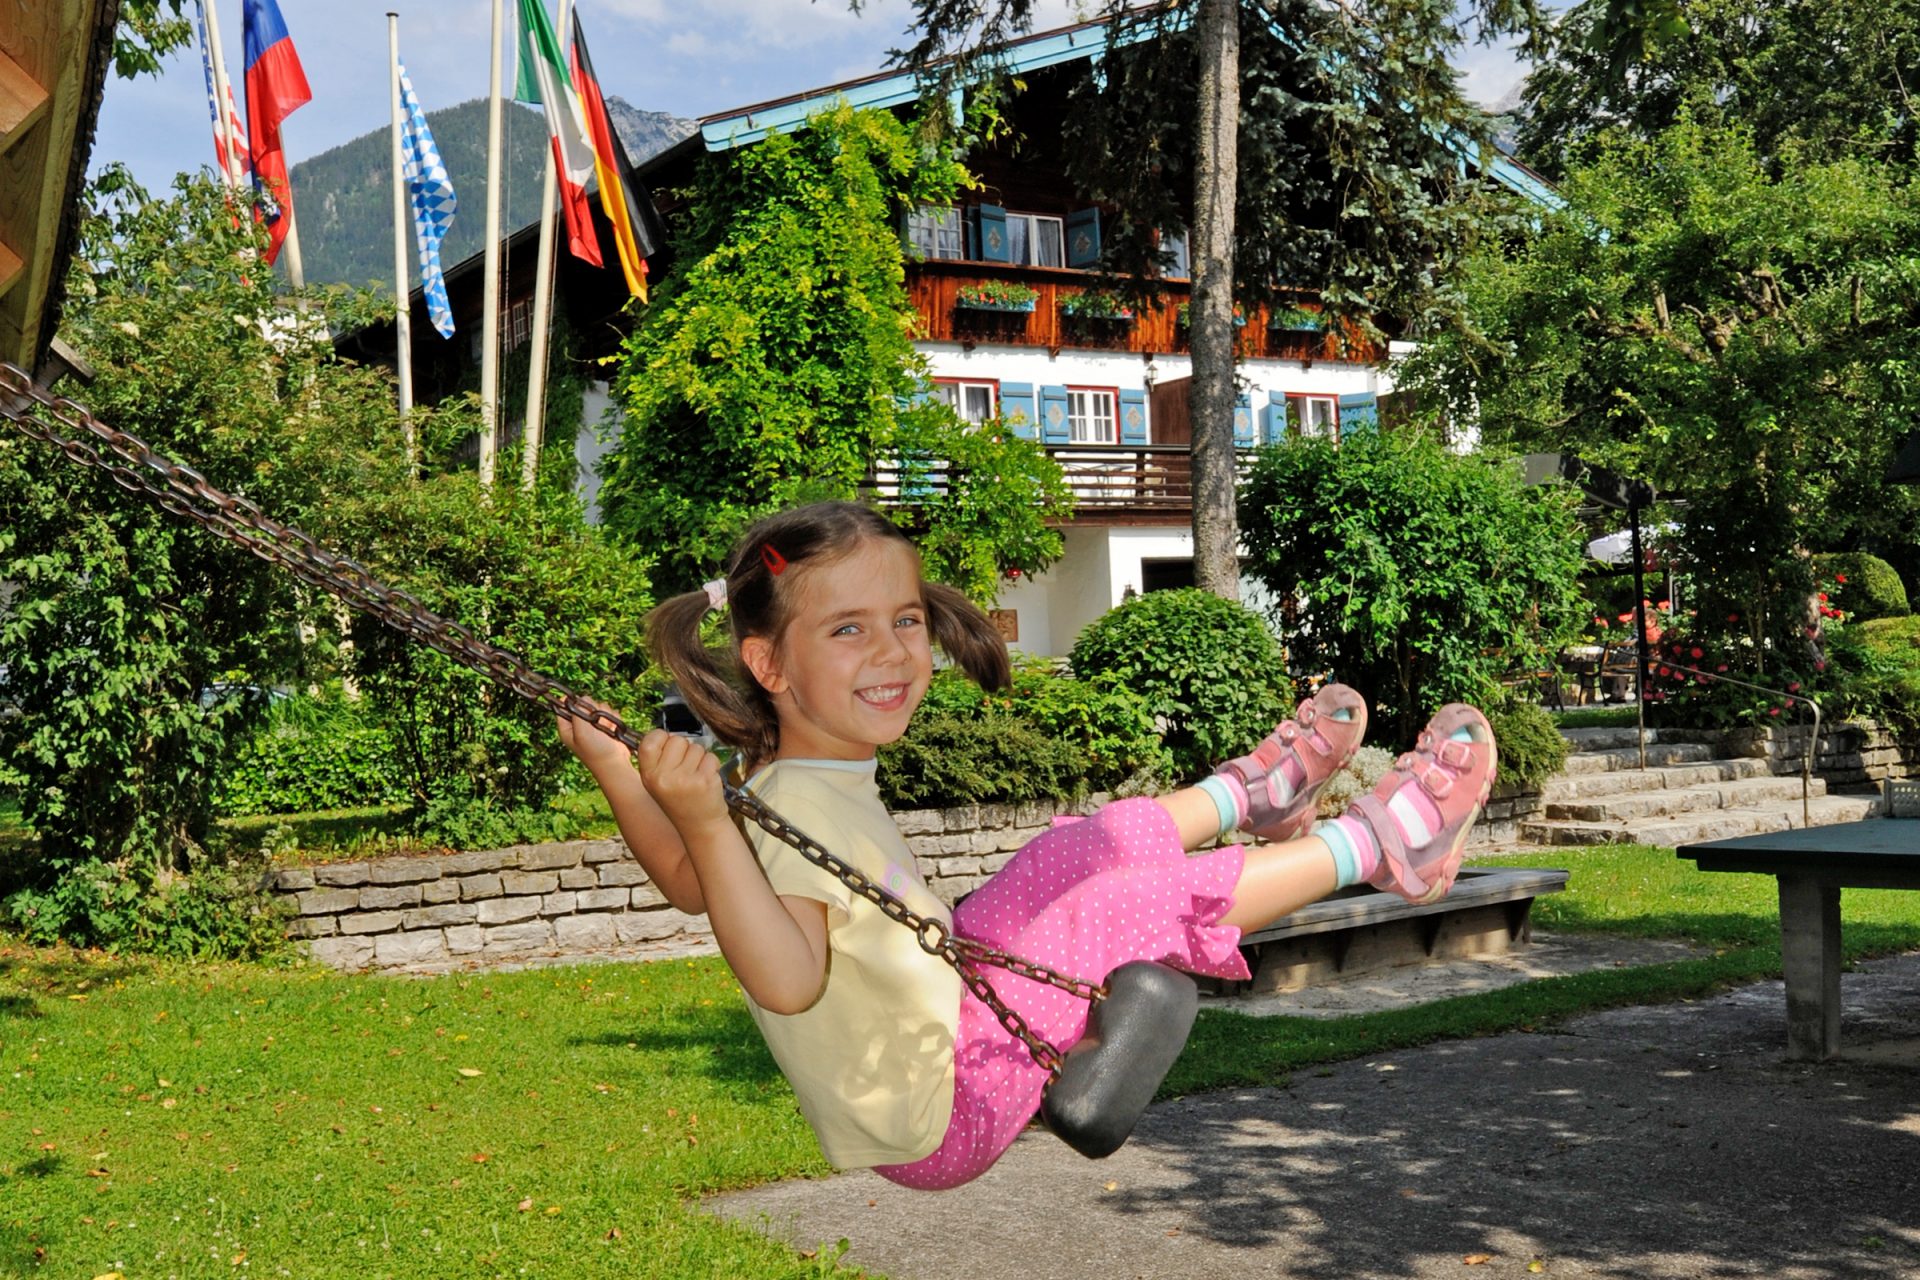 Children swing in the playground at Stoll's Hotel Alpina in Schönau am Königssee / Berchtesgaden